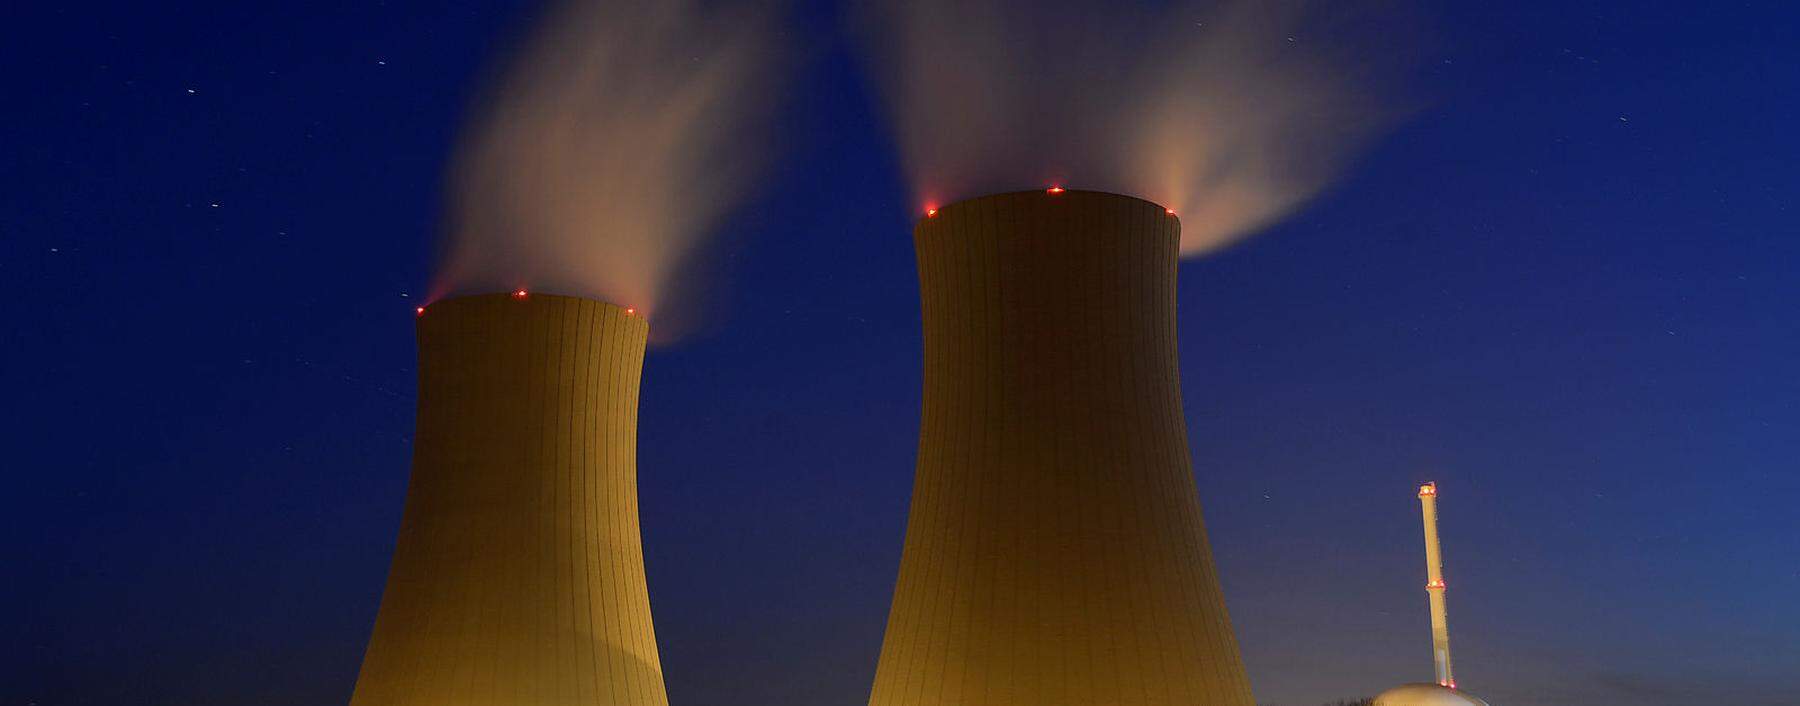 Archivbild: Das Atomkraftwerk Grohnde auf einer Langzeitbelichtung aus dem Jahr 2013.